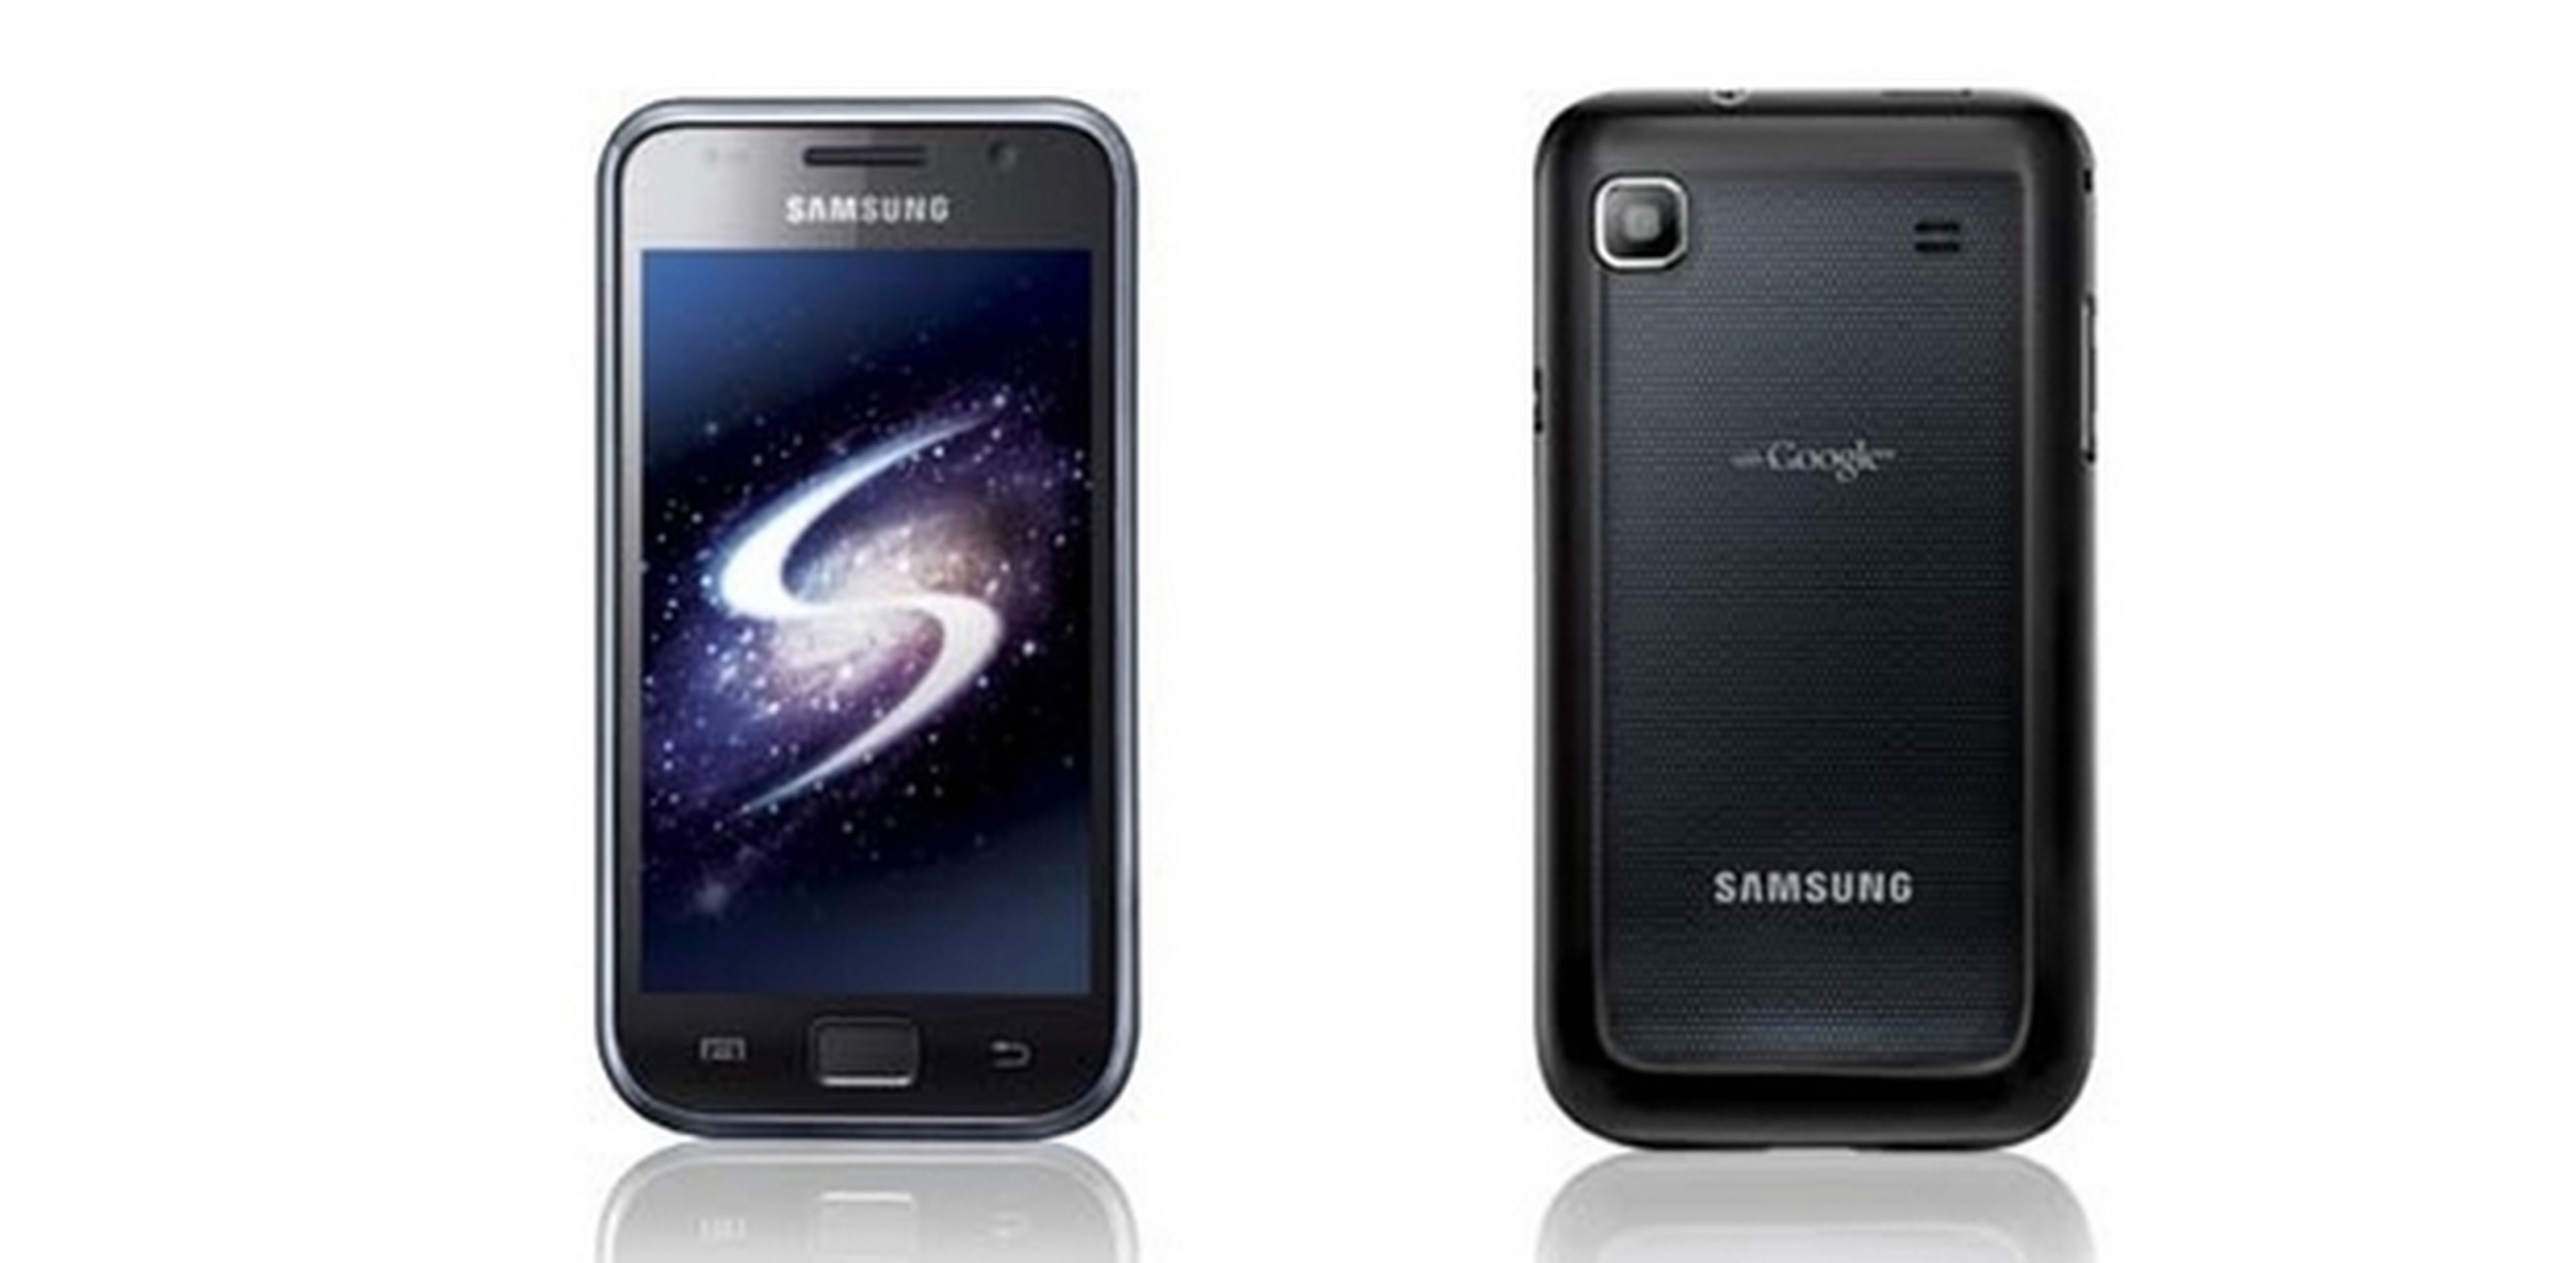 Samsung Galaxy S7, la evolución de la familia Galaxy S